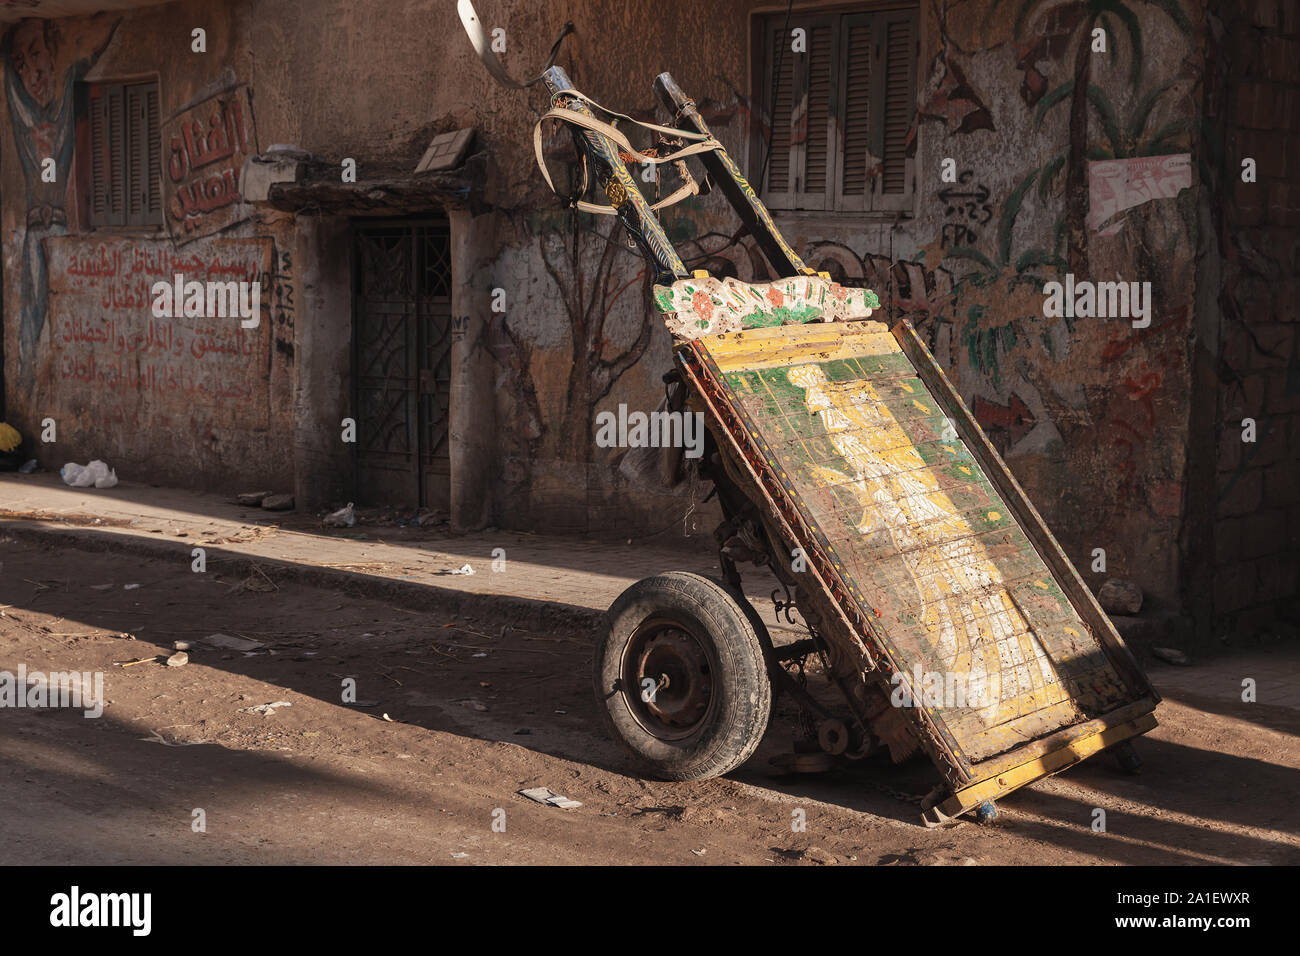 Alexandria, Ägypten - Dezember 18, 2018: Leere alten hölzernen Pferden gezogenen Wagen steht auf einer schmutzigen Straße von Alexandria Stockfoto